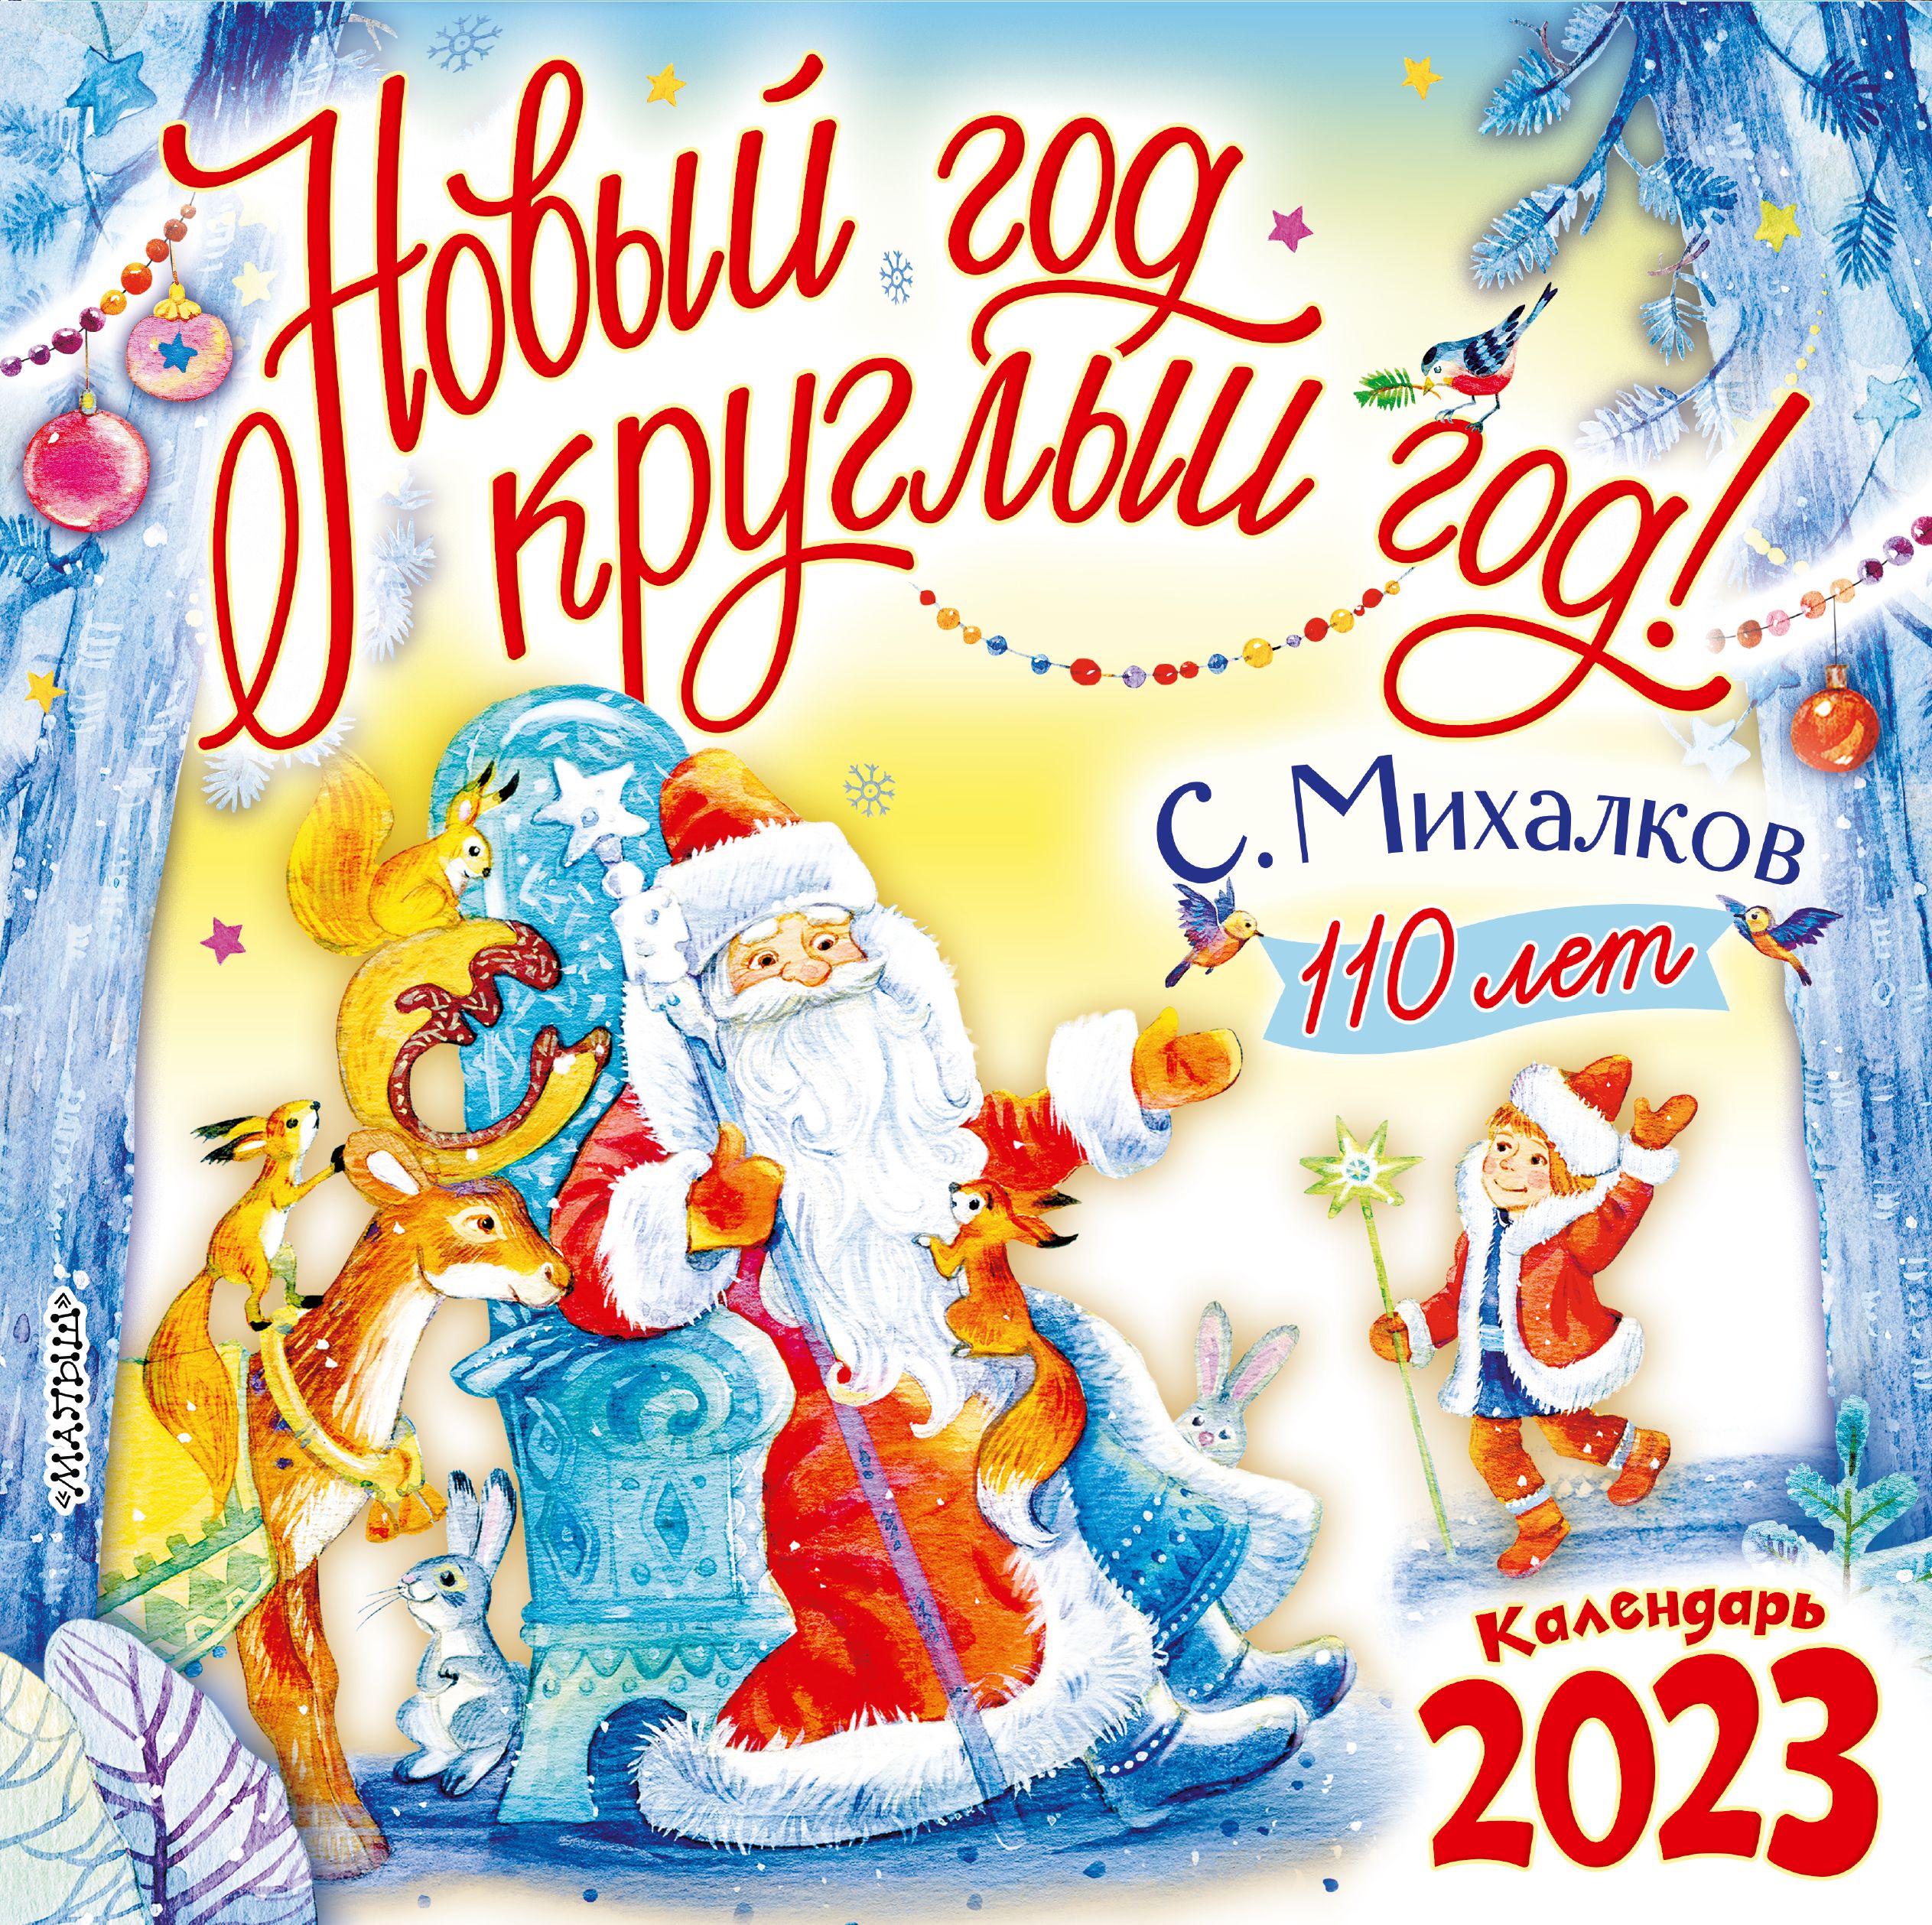 Новый год круглый год. С новым годом 2023. Новый год круглый год Михалков. Новогодняя сказка. Новогодняя сказка афиша.